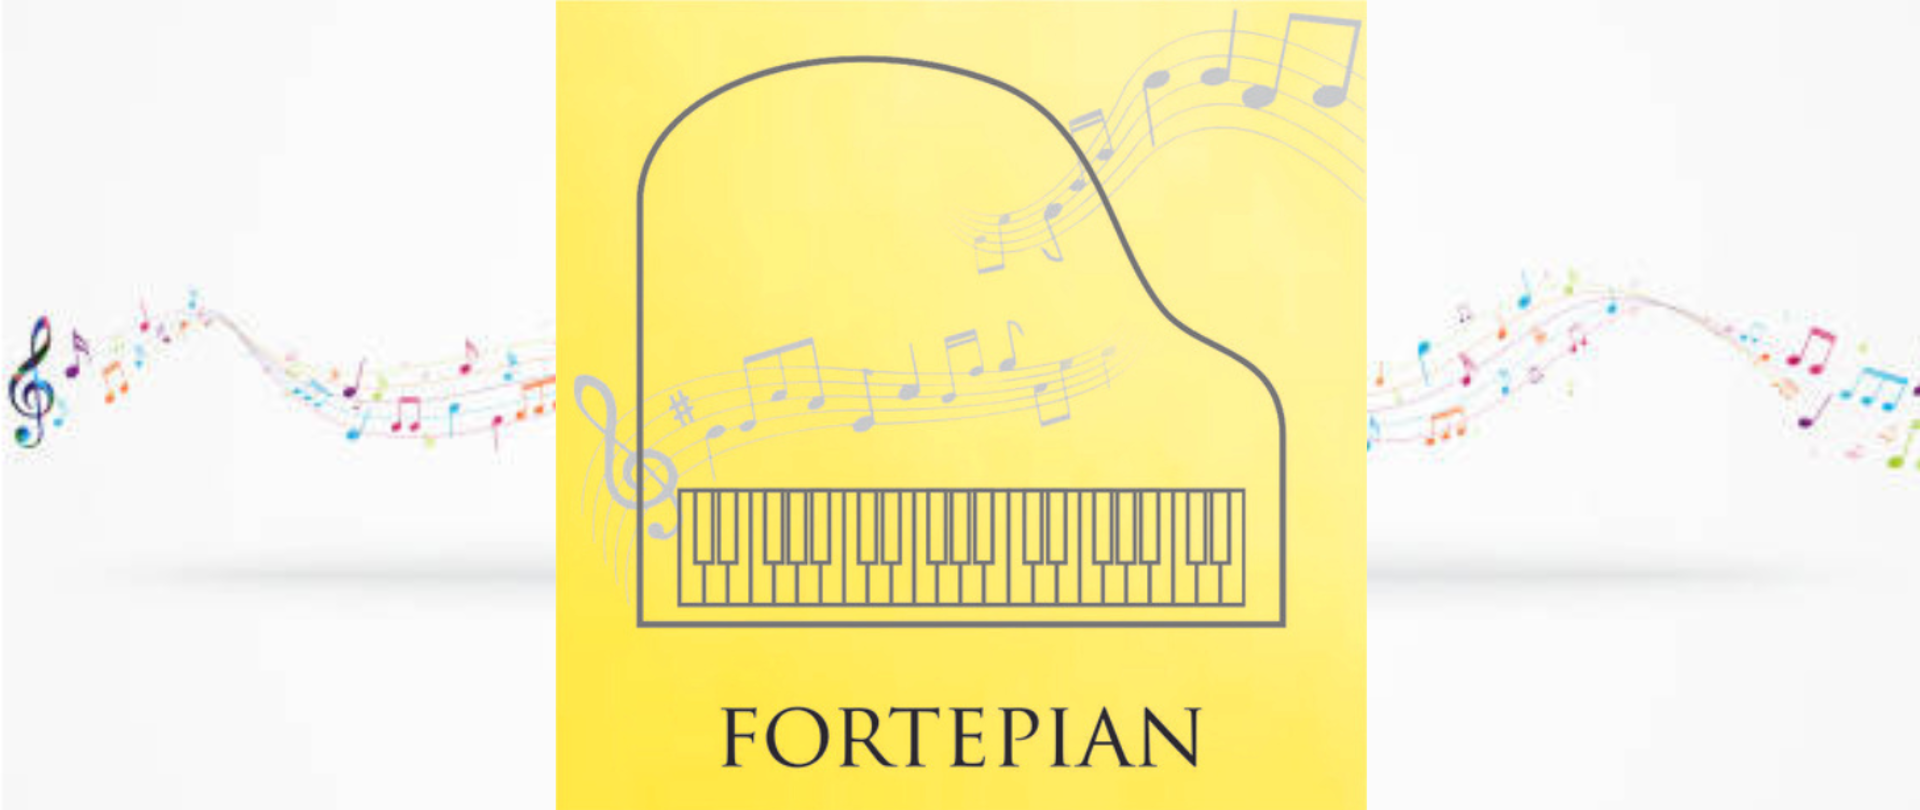 grafika przedstawiająca fortepian na tle nut , pod grafiką instrumentu napis fortepian